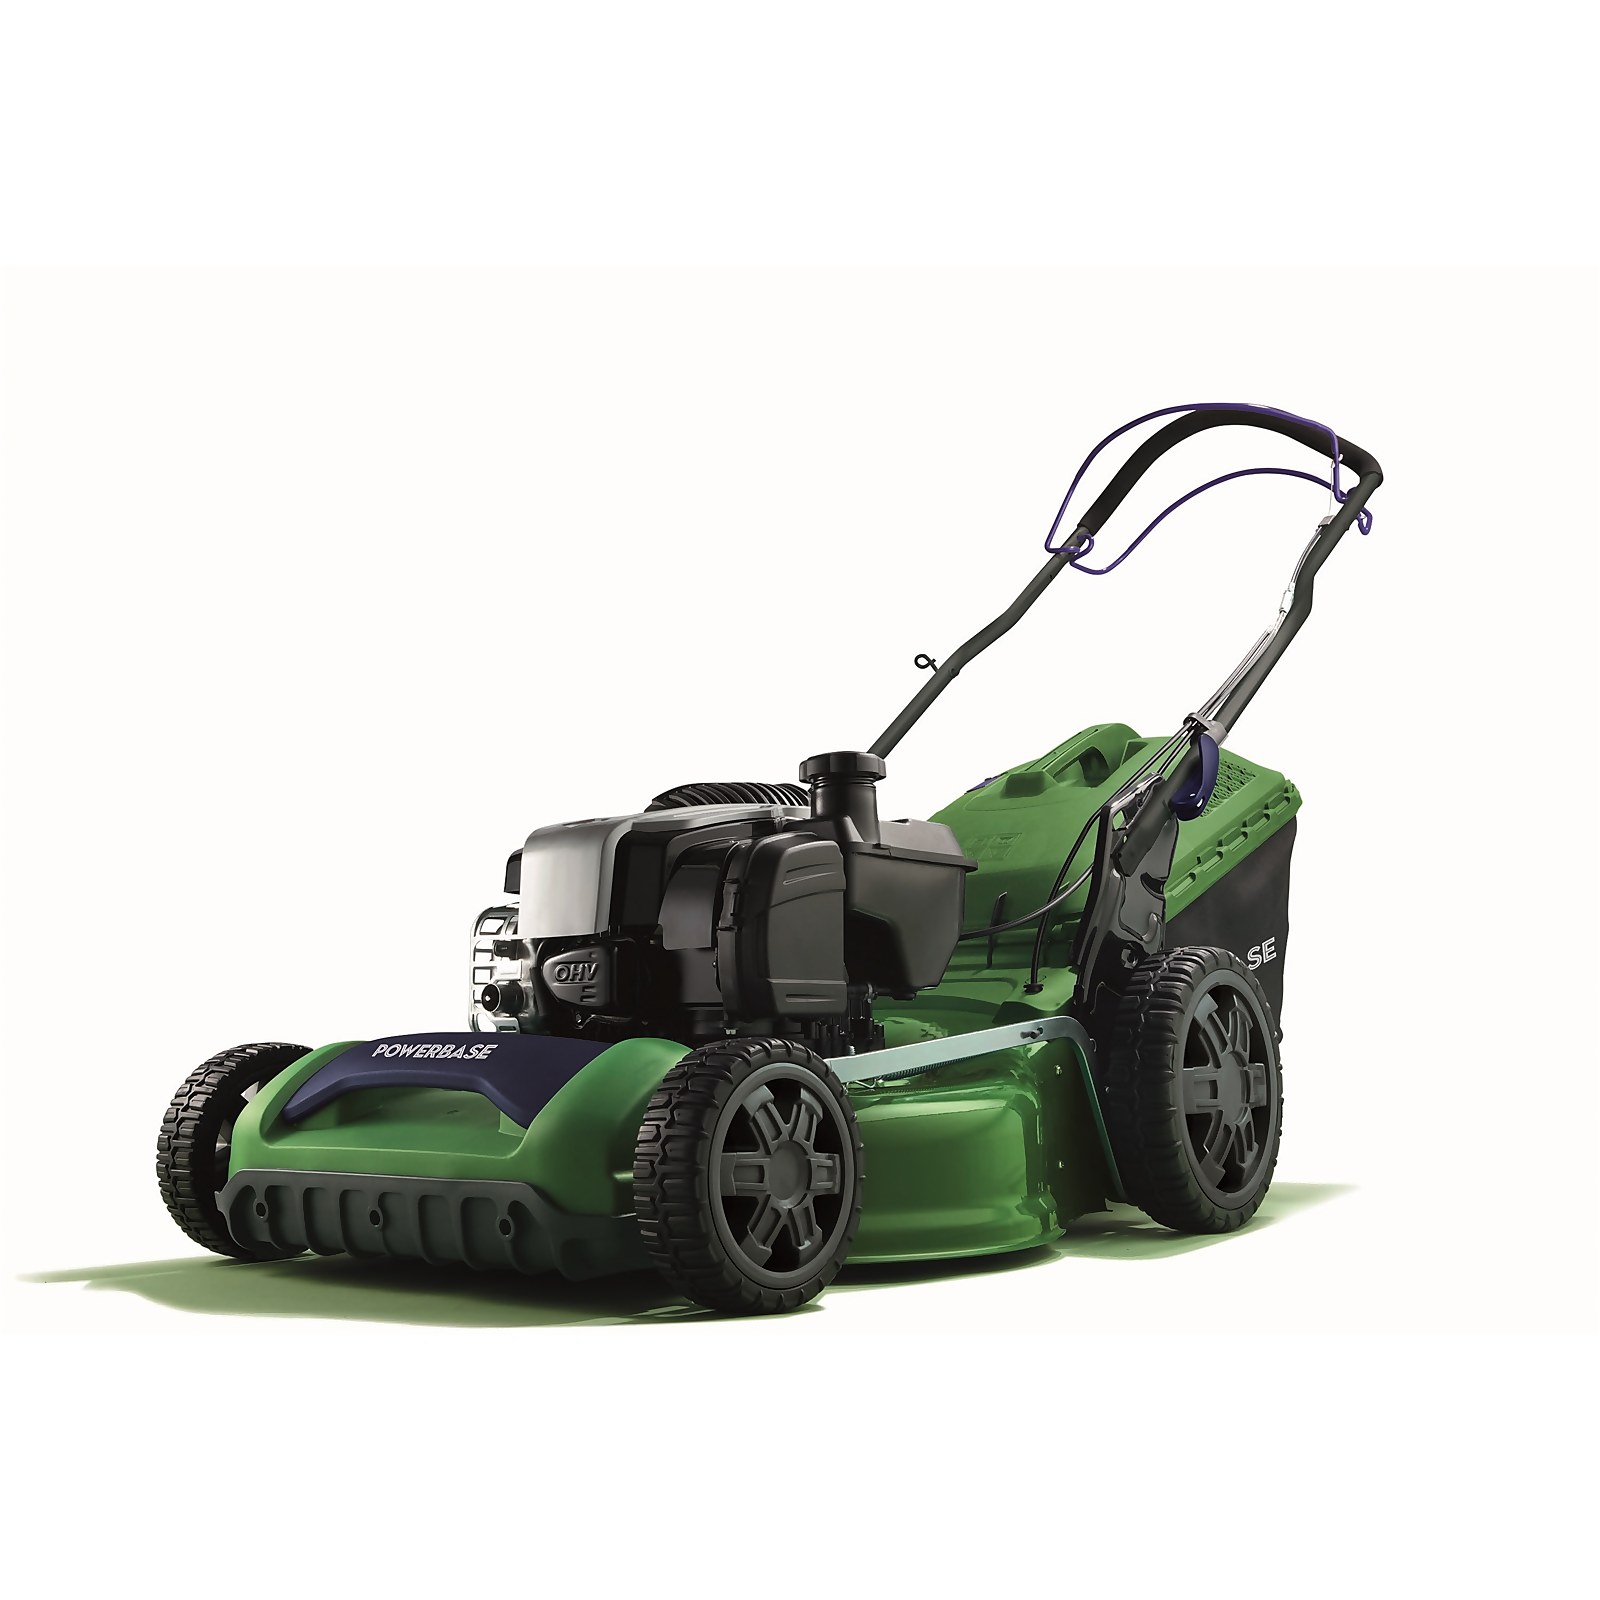 Powerbase 51cm 625exi Petrol Self-Propelled Lawn Mower